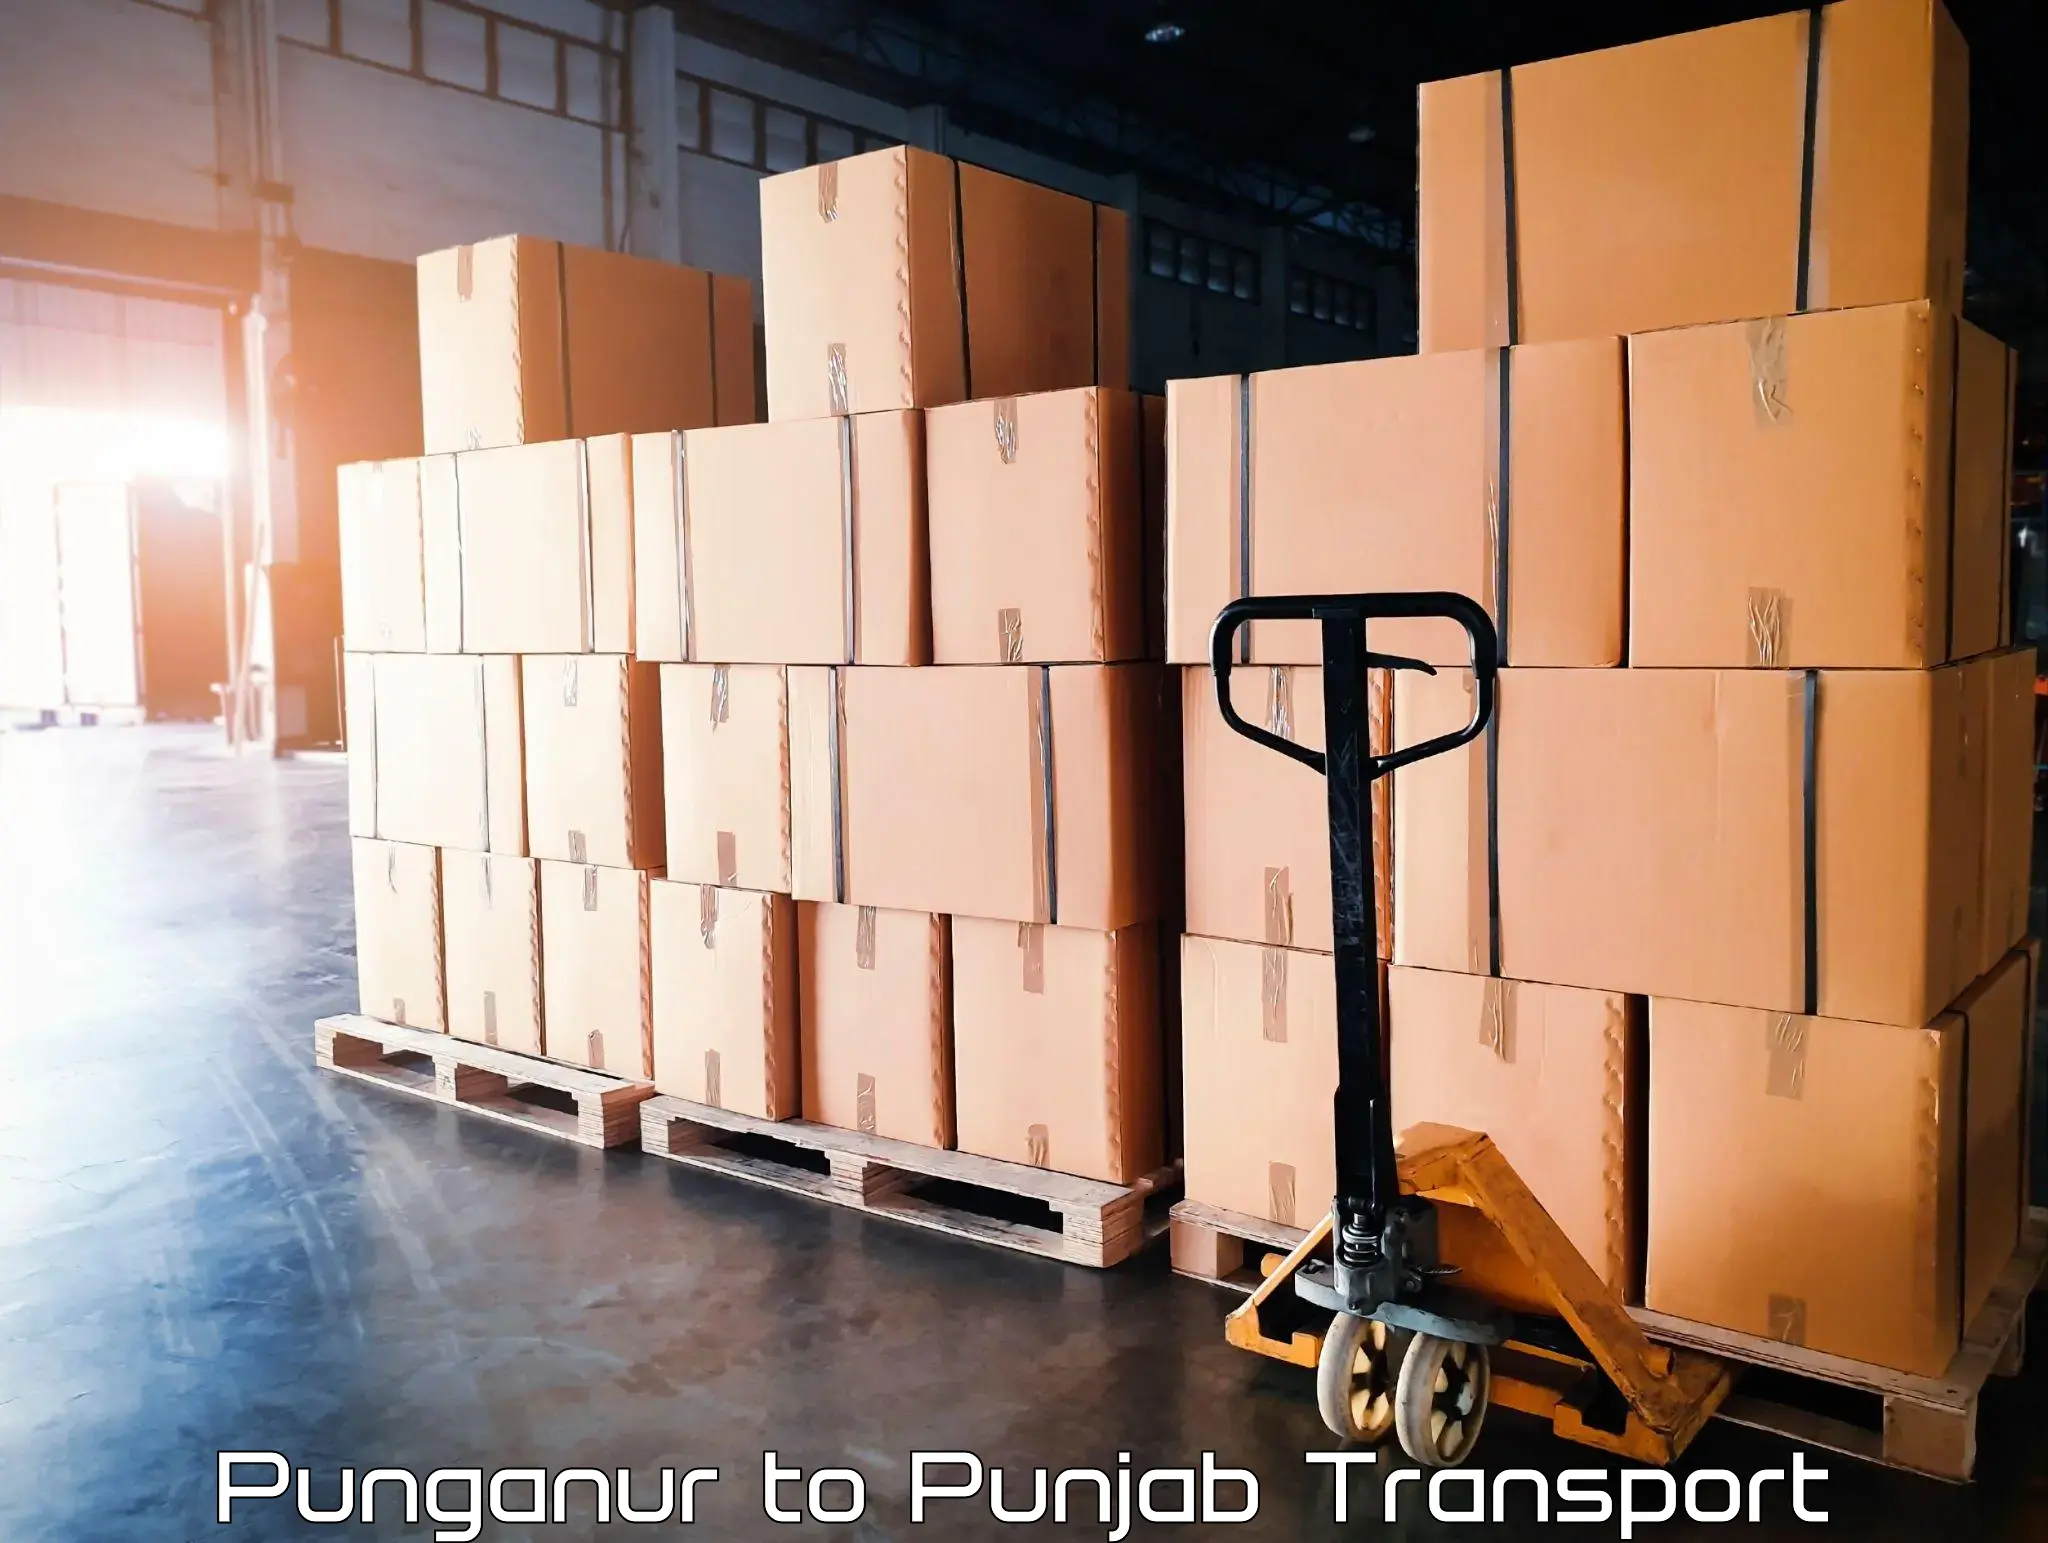 Part load transport service in India Punganur to Punjab